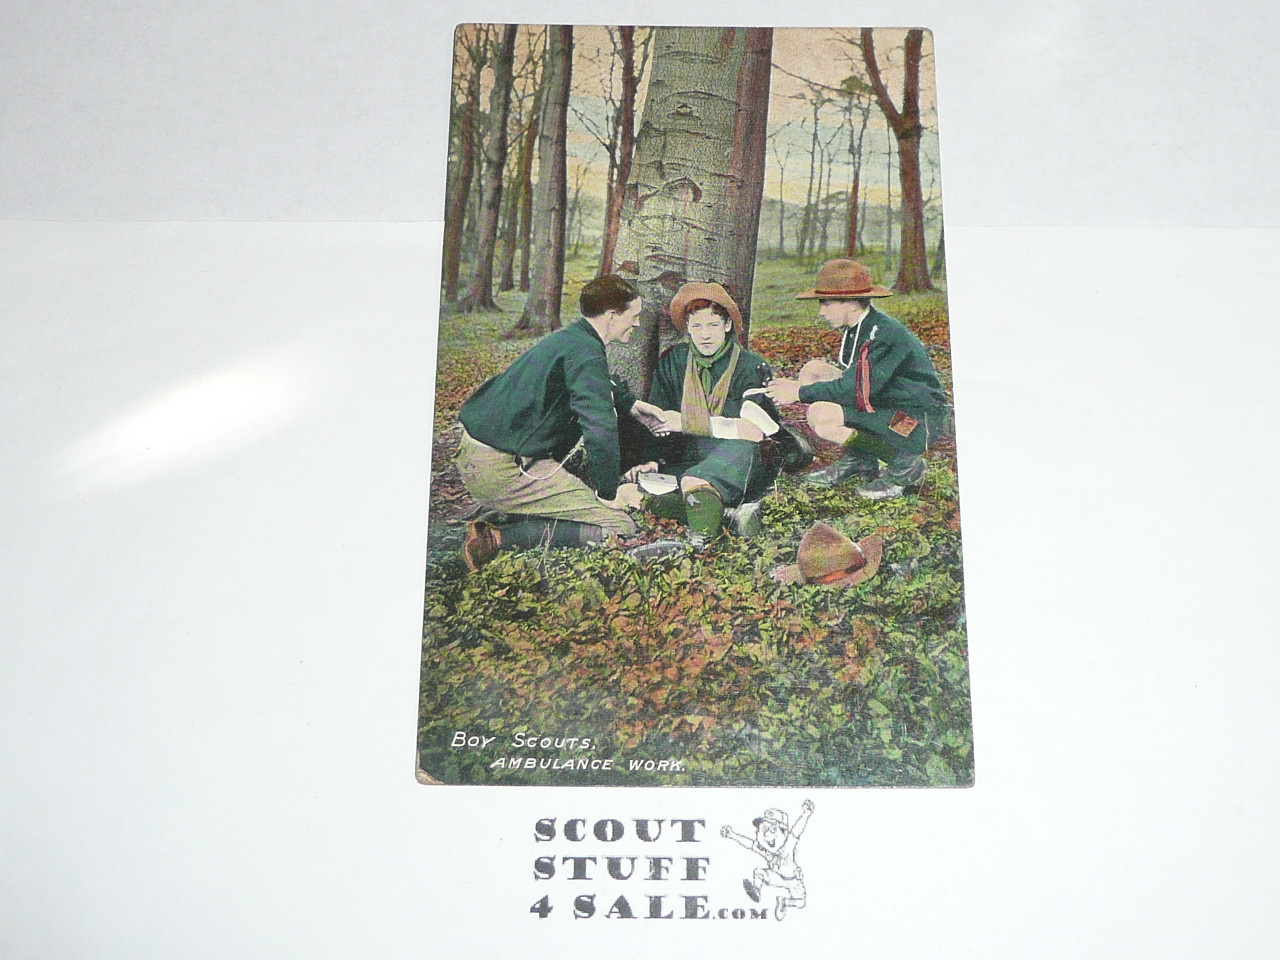 1909 British Boy Scout Postcard, colorized Photo Postcard, Boy Scout Ambulance Work